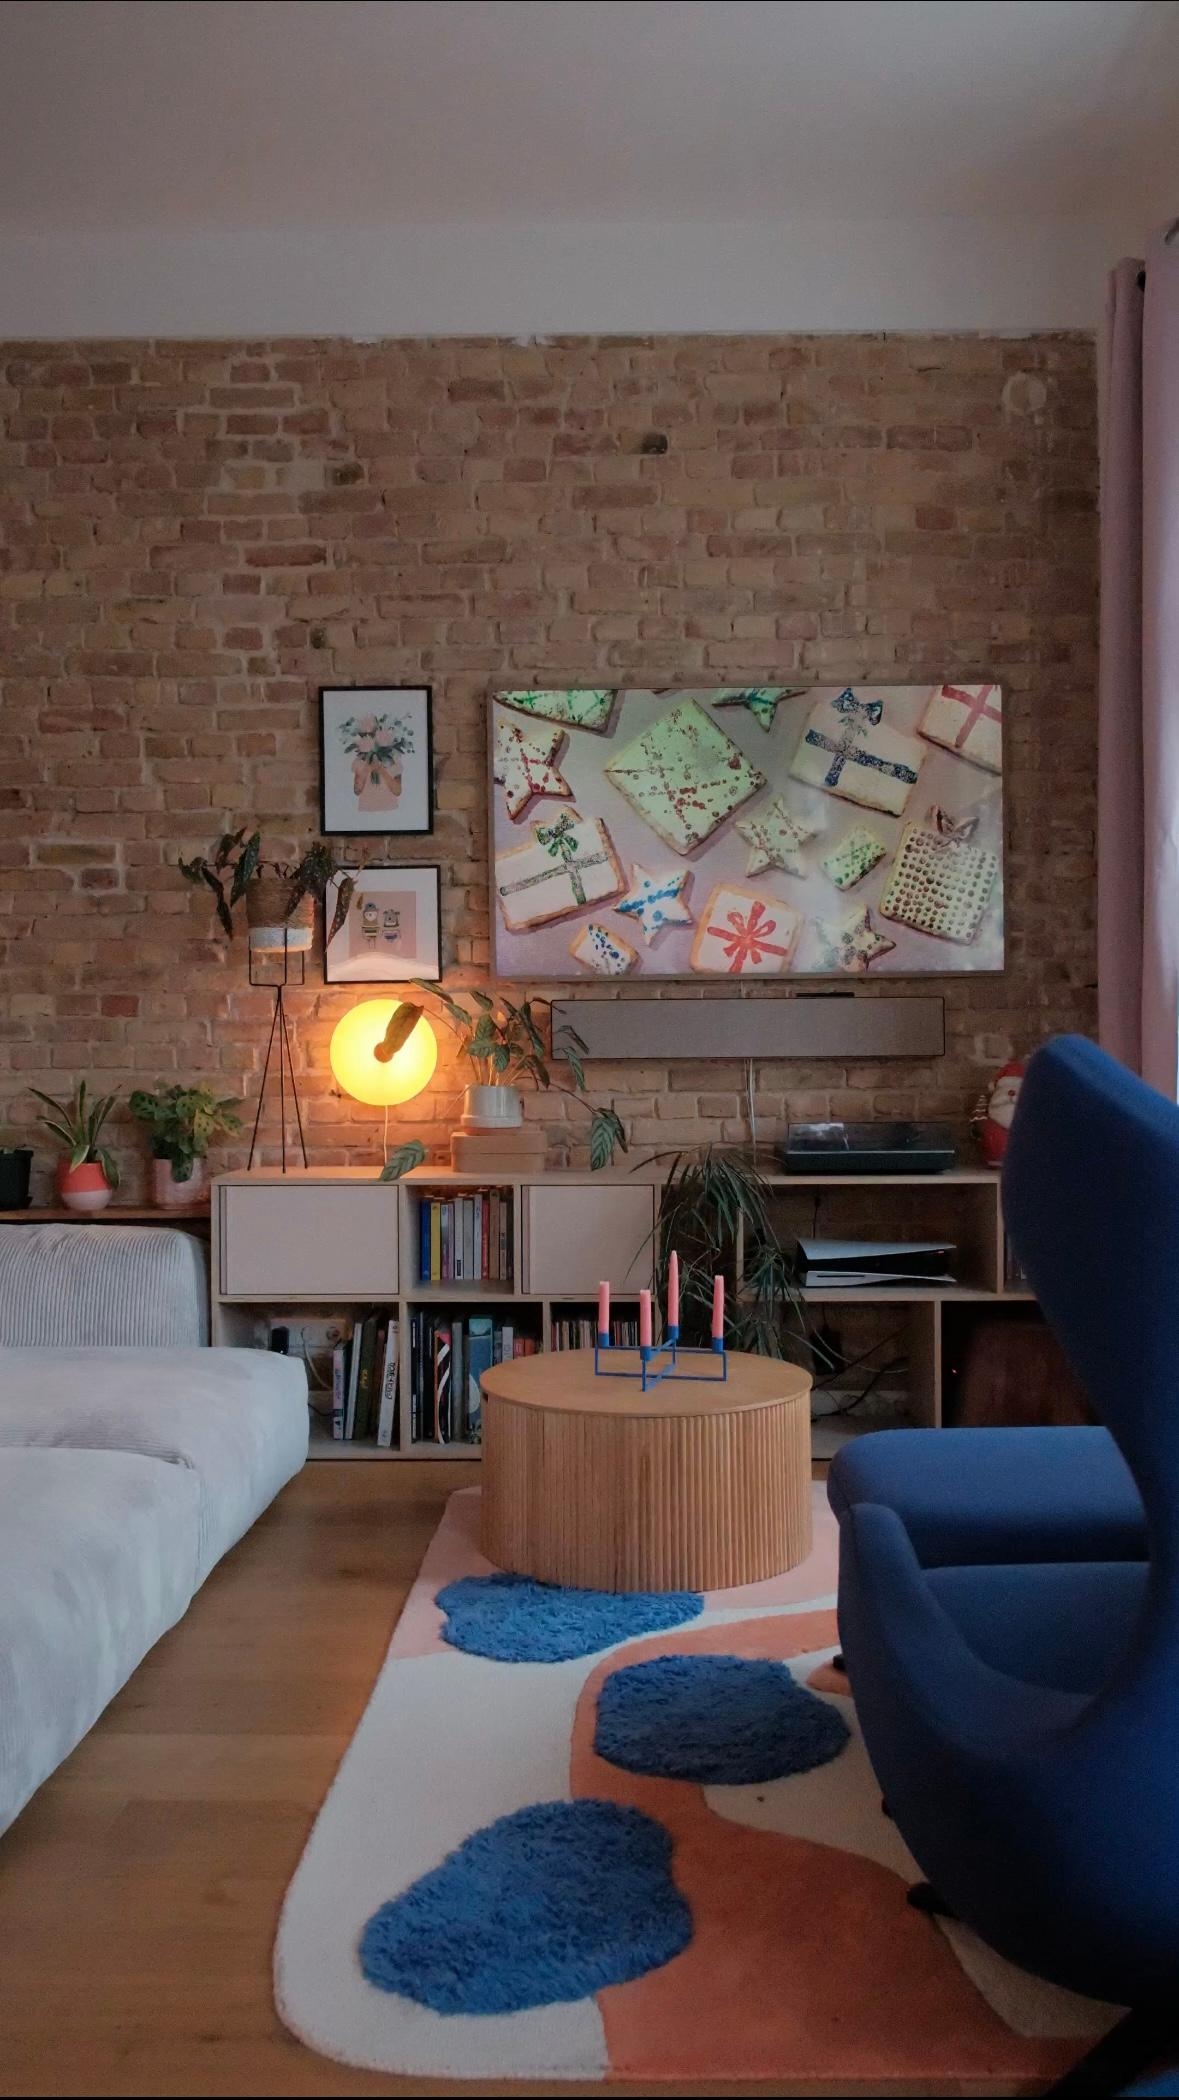 #wohnzimmer #altbauwohnung #couchliebt #gemütlich #farbenfroh #couchtisch #tv #sessel #teppich